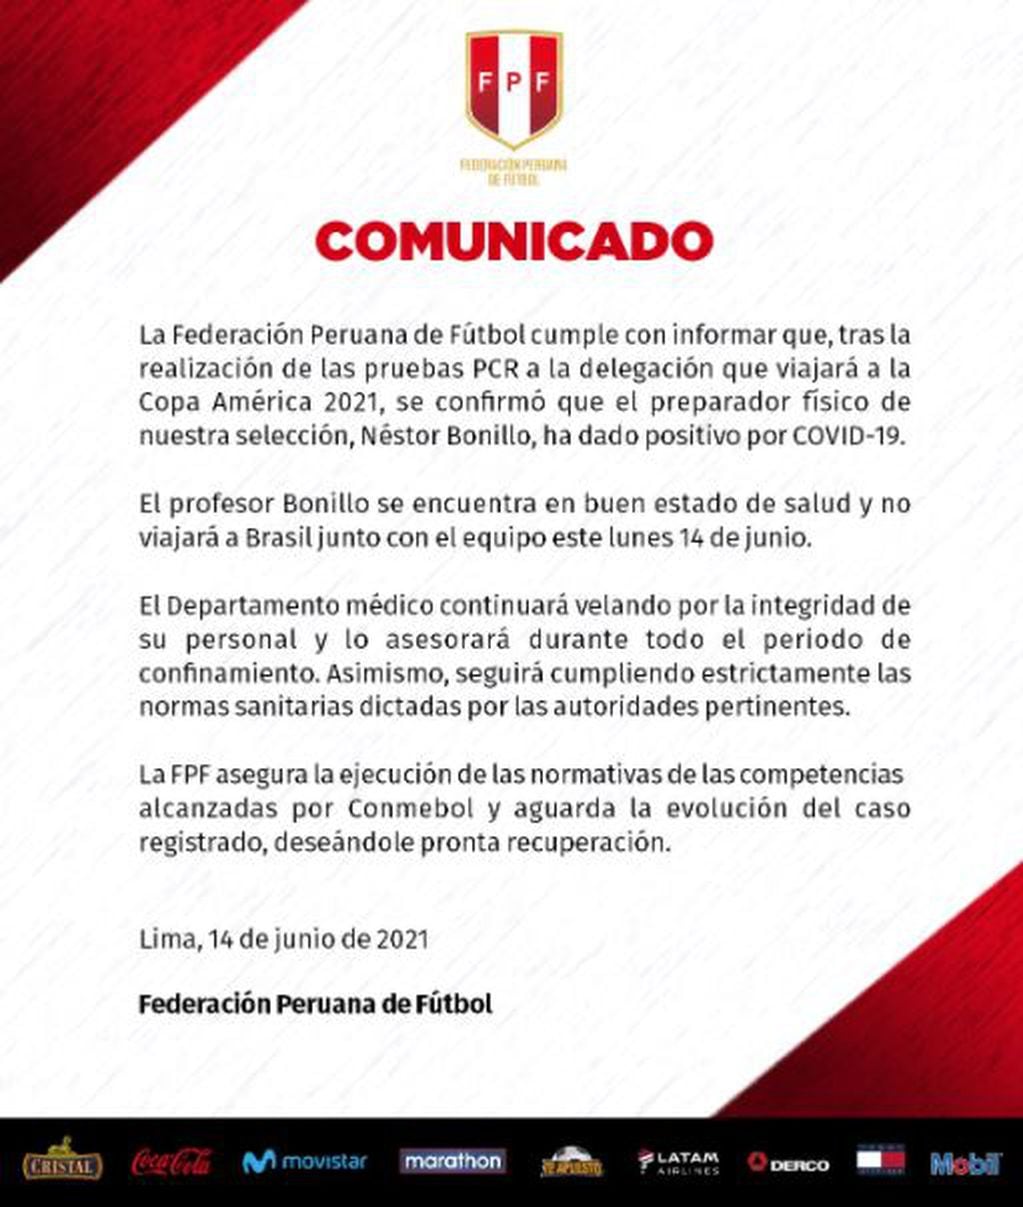 El preparador físico de la Selección de Perú tiene coronavirus y no viajará a Brasil.